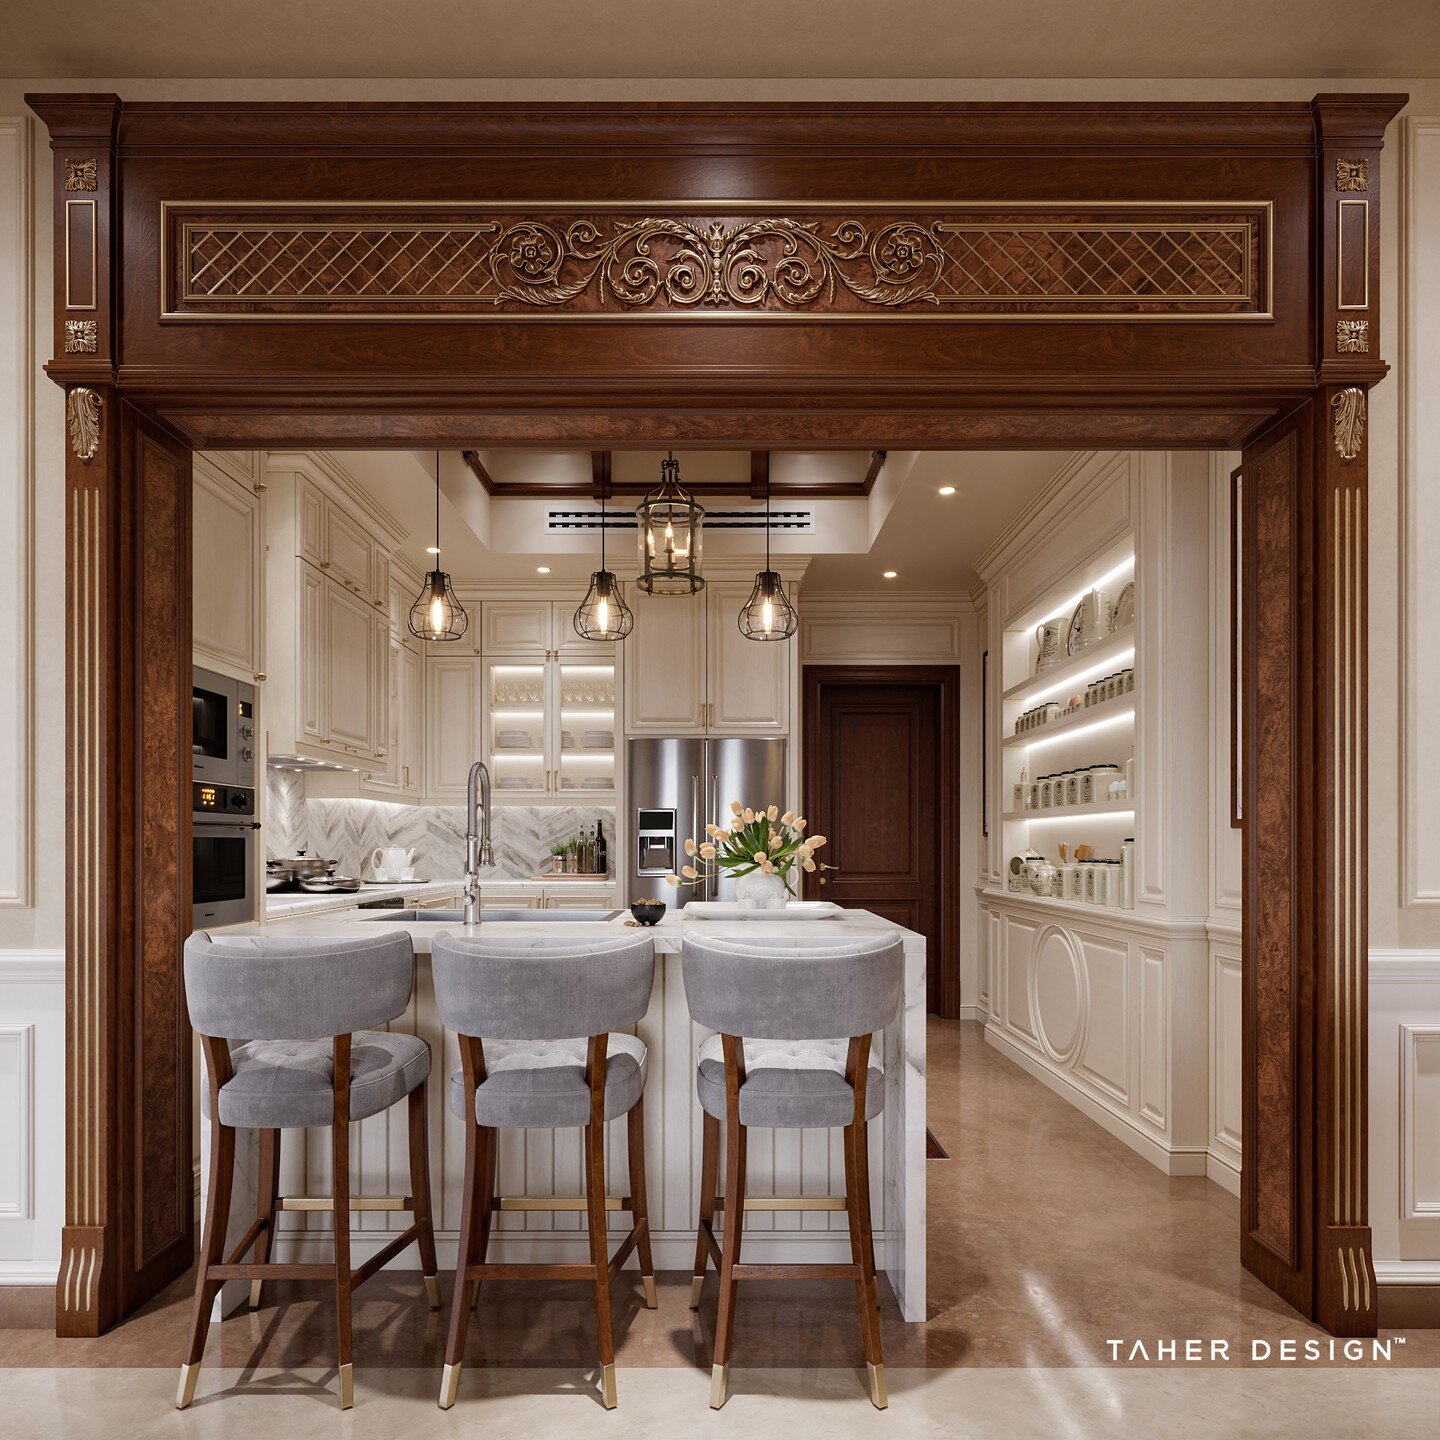 من أعمالنا تصميم داخلي لڤيلا سكنية لأحد عملاؤنا بجدة -المملكة العربية السعودية
Family Kitchen Design by Taher Design Studio for a villa in Jeddah, Saudi Arabia , &copy;2022 Taher Design Studio. 

Tel &amp; WhatsApp : +20 120 580 0646 / contact@tah